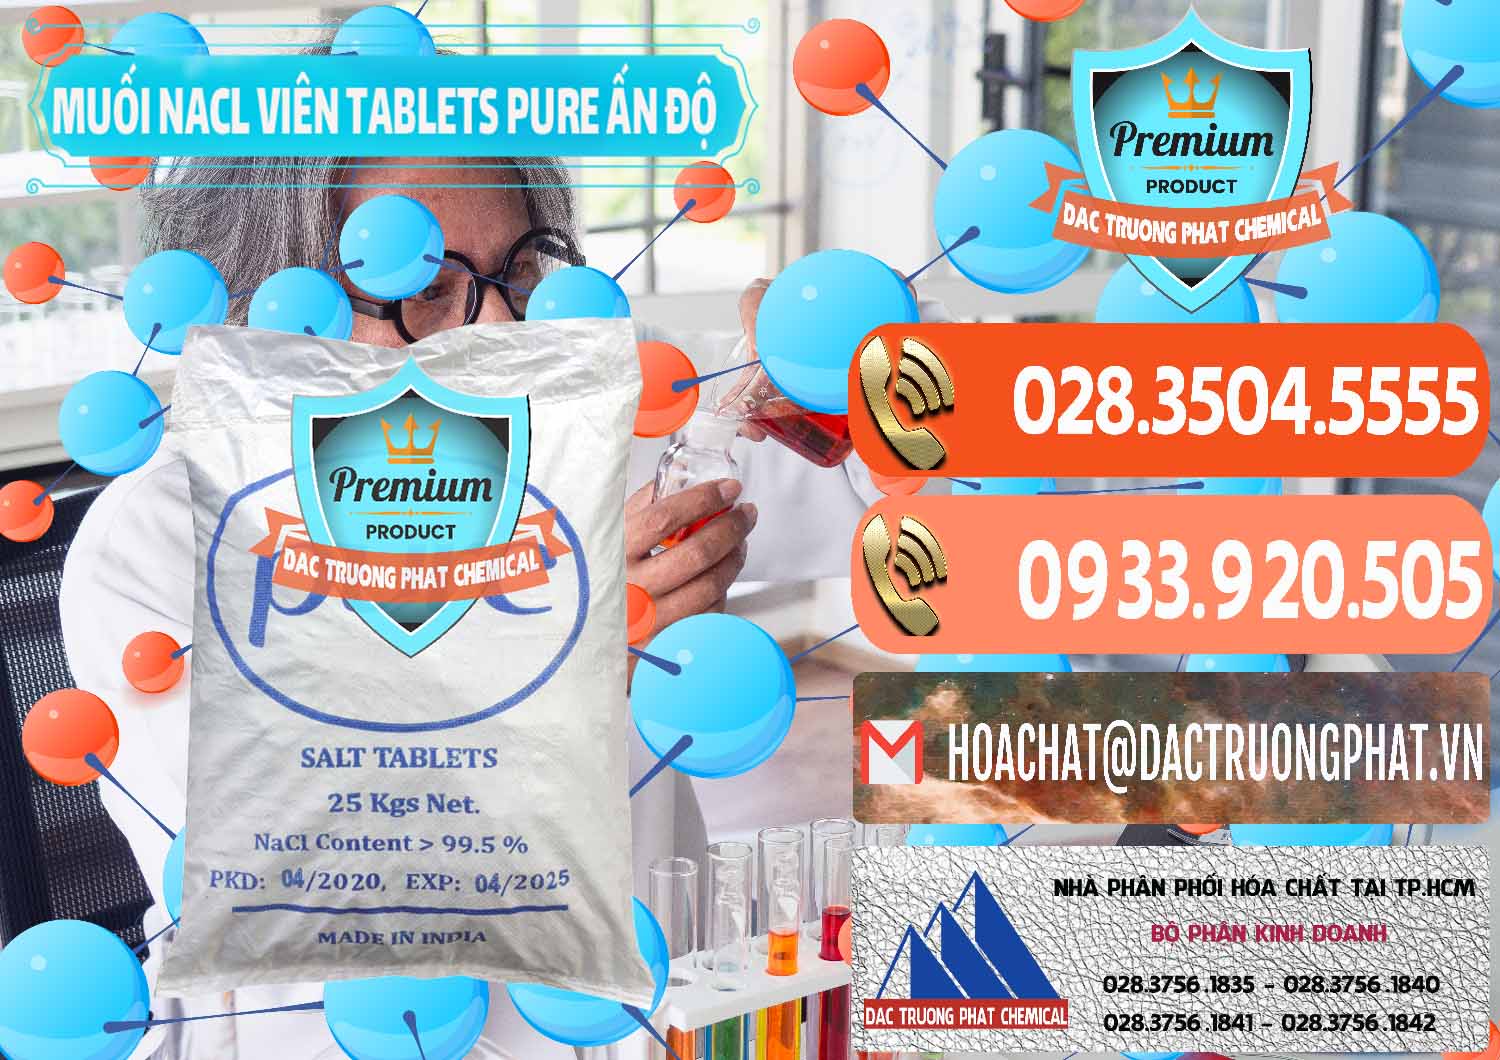 Nơi bán - cung cấp Muối NaCL – Sodium Chloride Dạng Viên Tablets Pure Ấn Độ India - 0294 - Cty chuyên nhập khẩu và cung cấp hóa chất tại TP.HCM - hoachatmientay.com